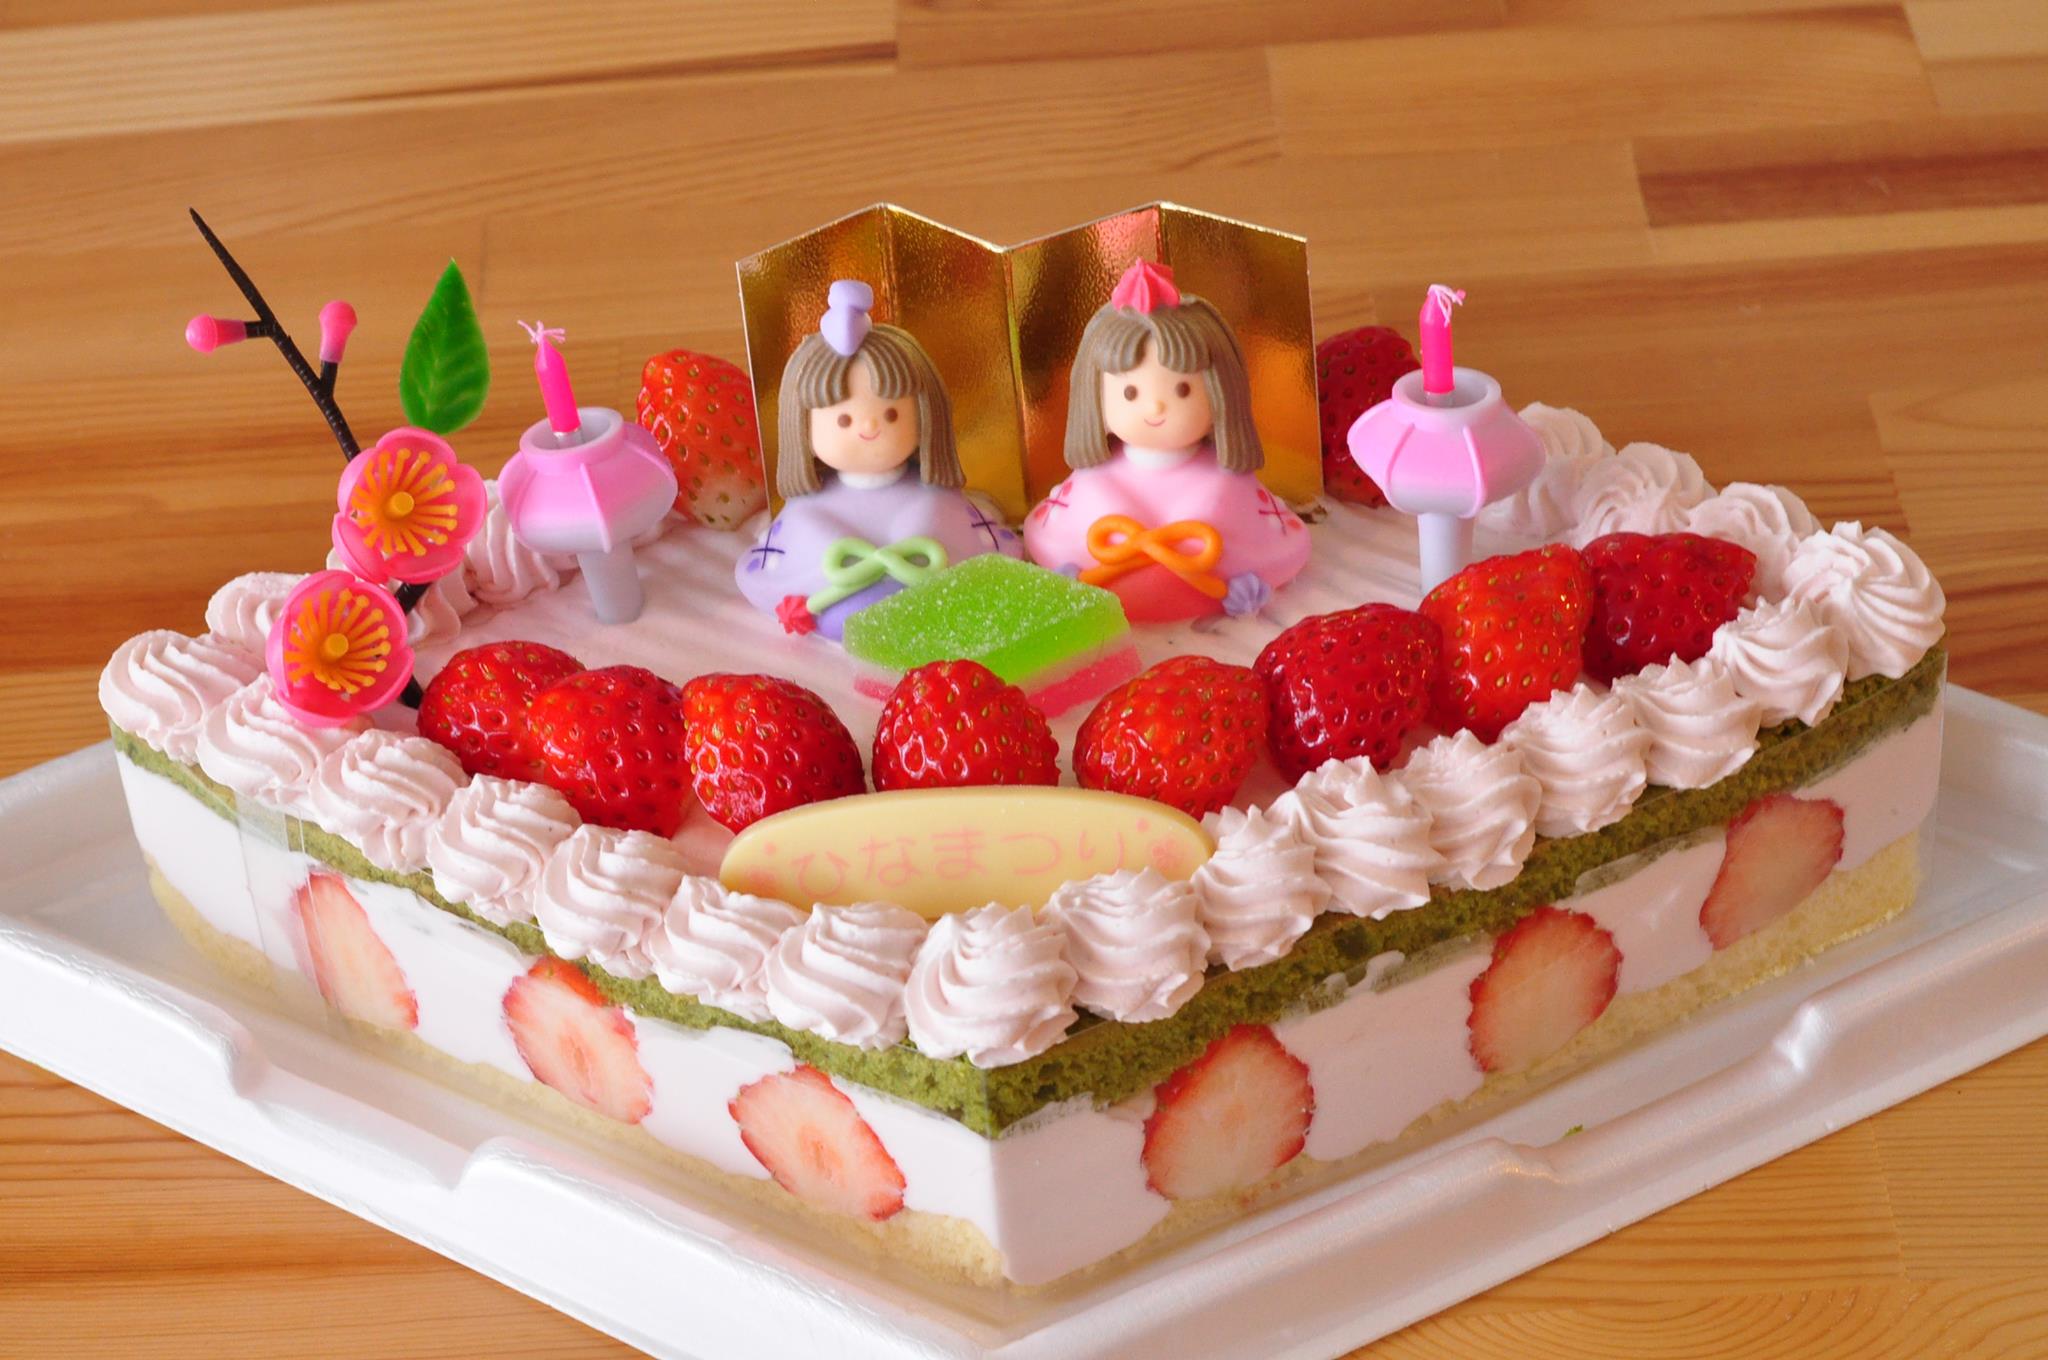 17ひな祭りケーキ カトルカールからのお知らせ Blog Archive カトル カール洋菓子店